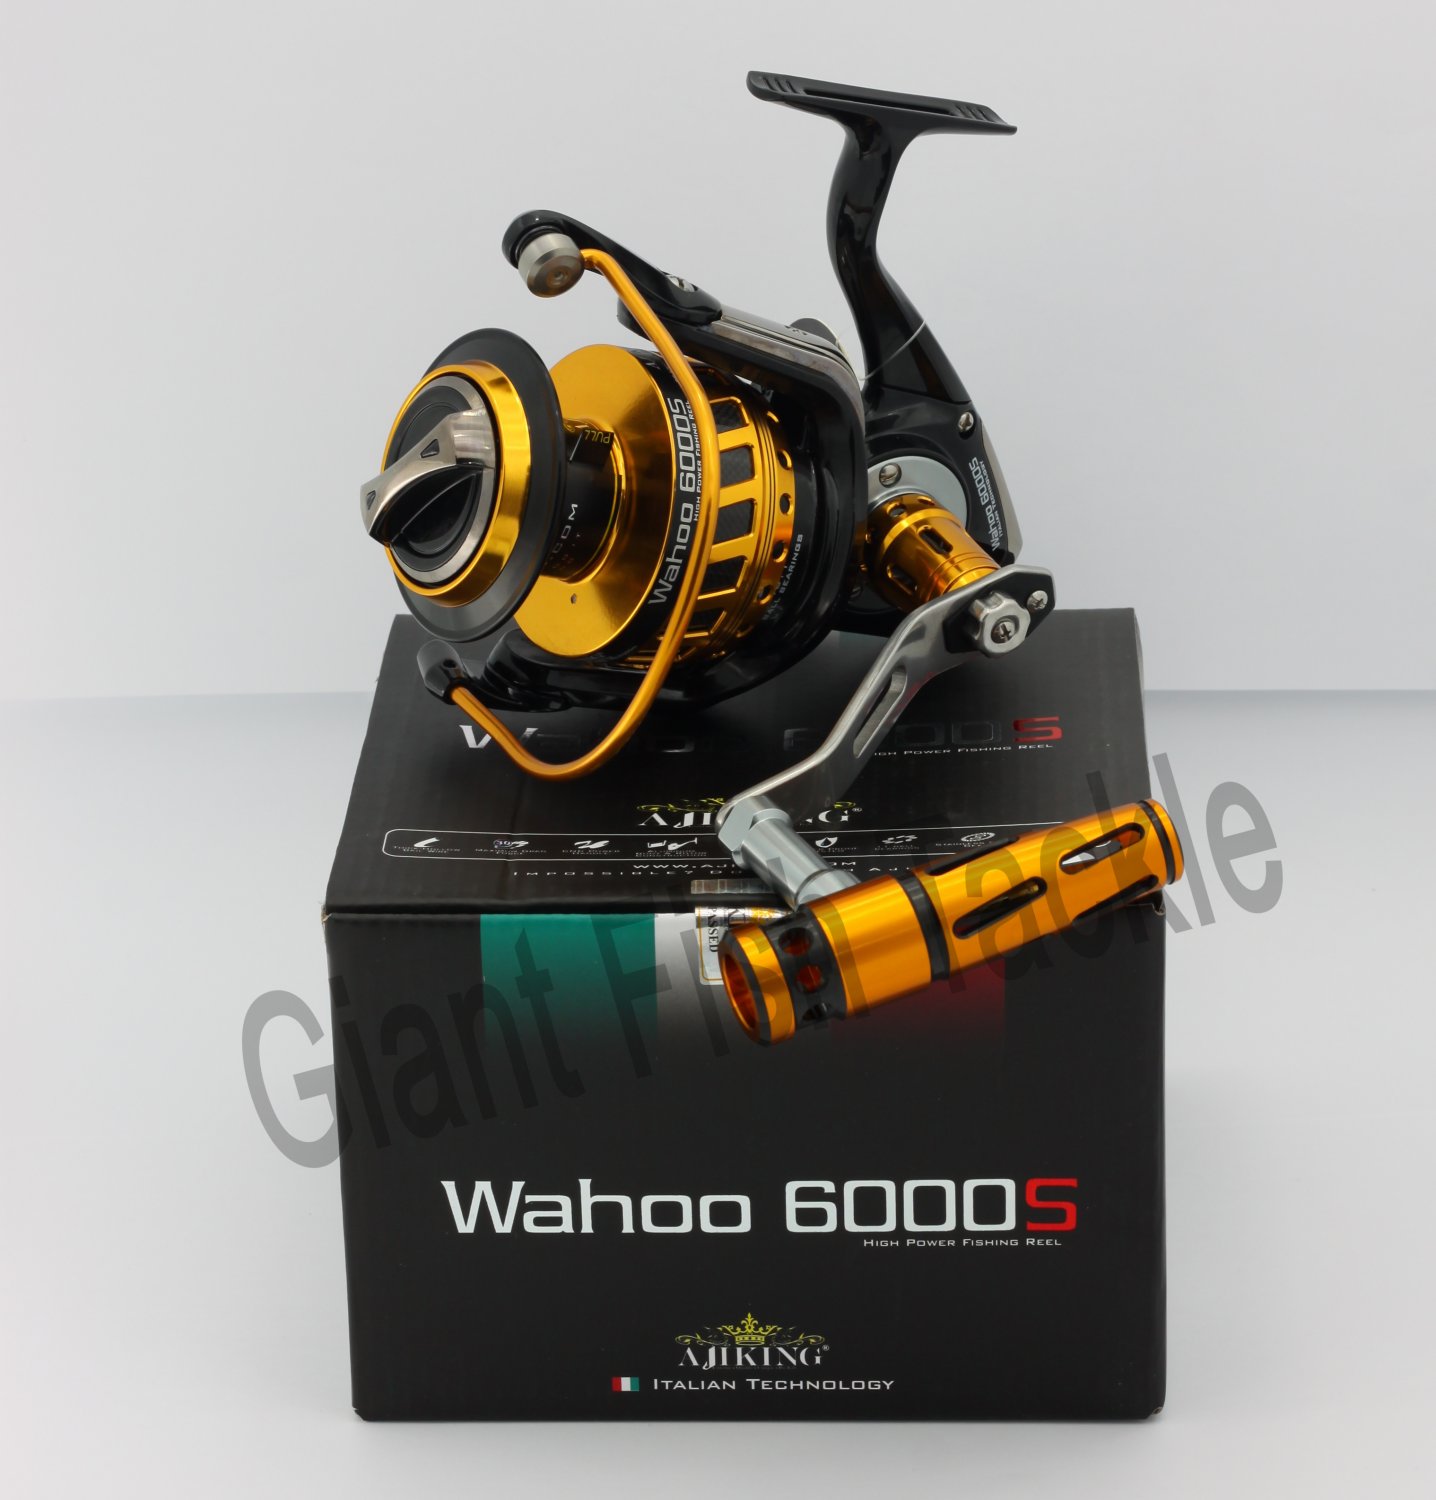 Ajiking Spinning Reel Wahoo 8000ES